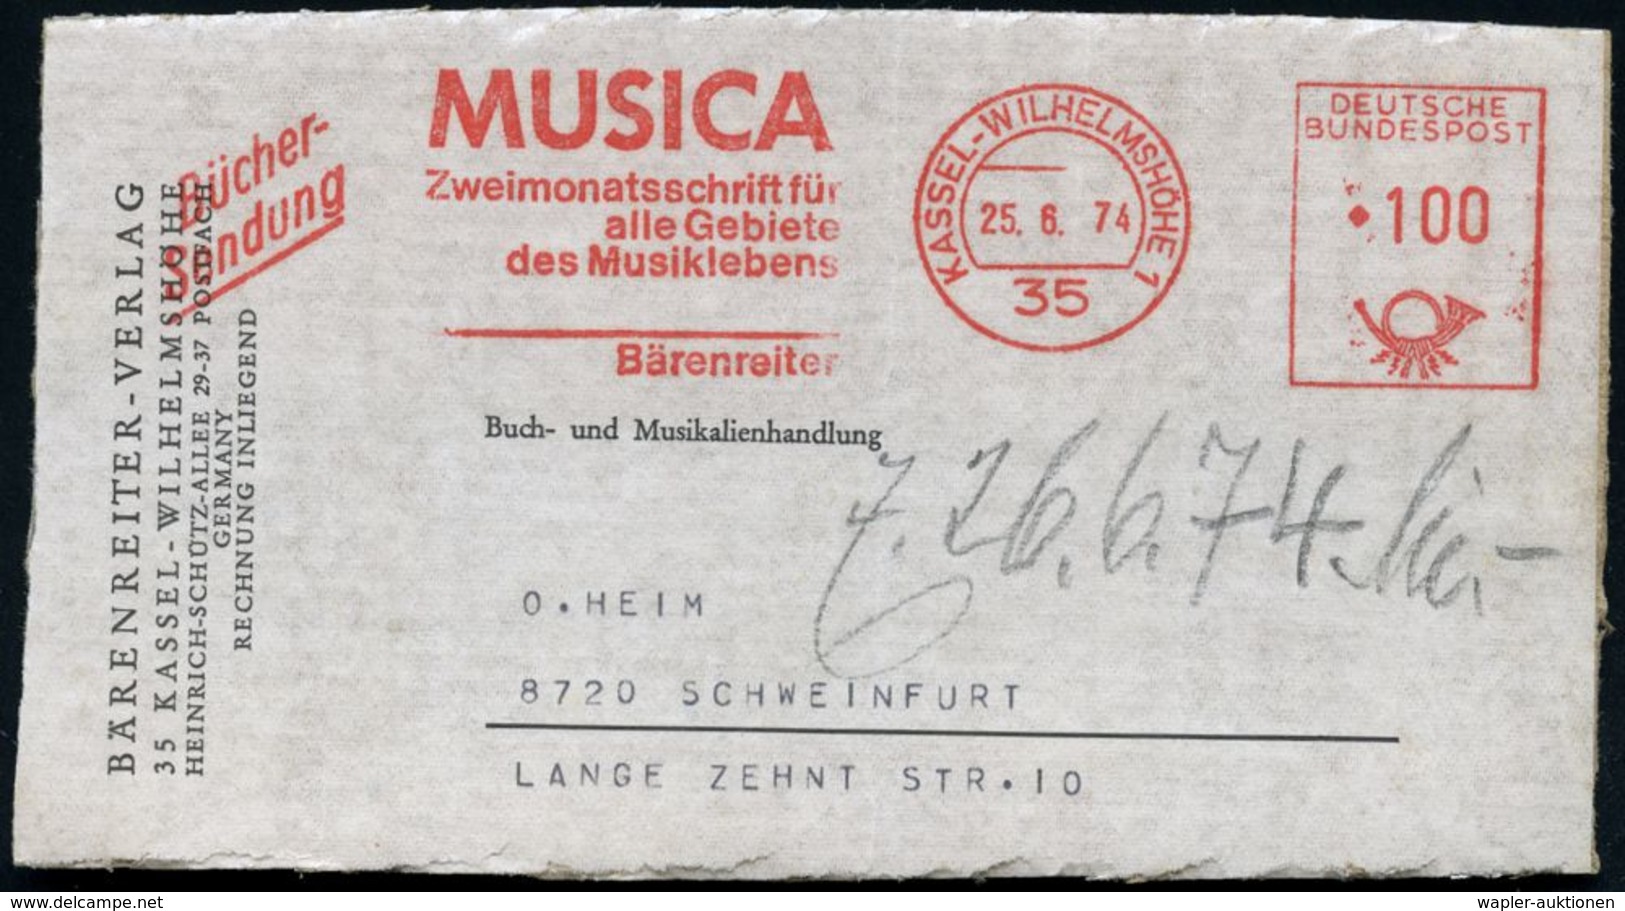 MUSIK-VERLAGE : 35 KASSEL-WILHELMSHÖHE 1/ MUSICA/ Zweimonatsschrift../ Bärenreiter 1974 (25.6.) AFS 100 Pf. + Zusatz "Bü - Musique